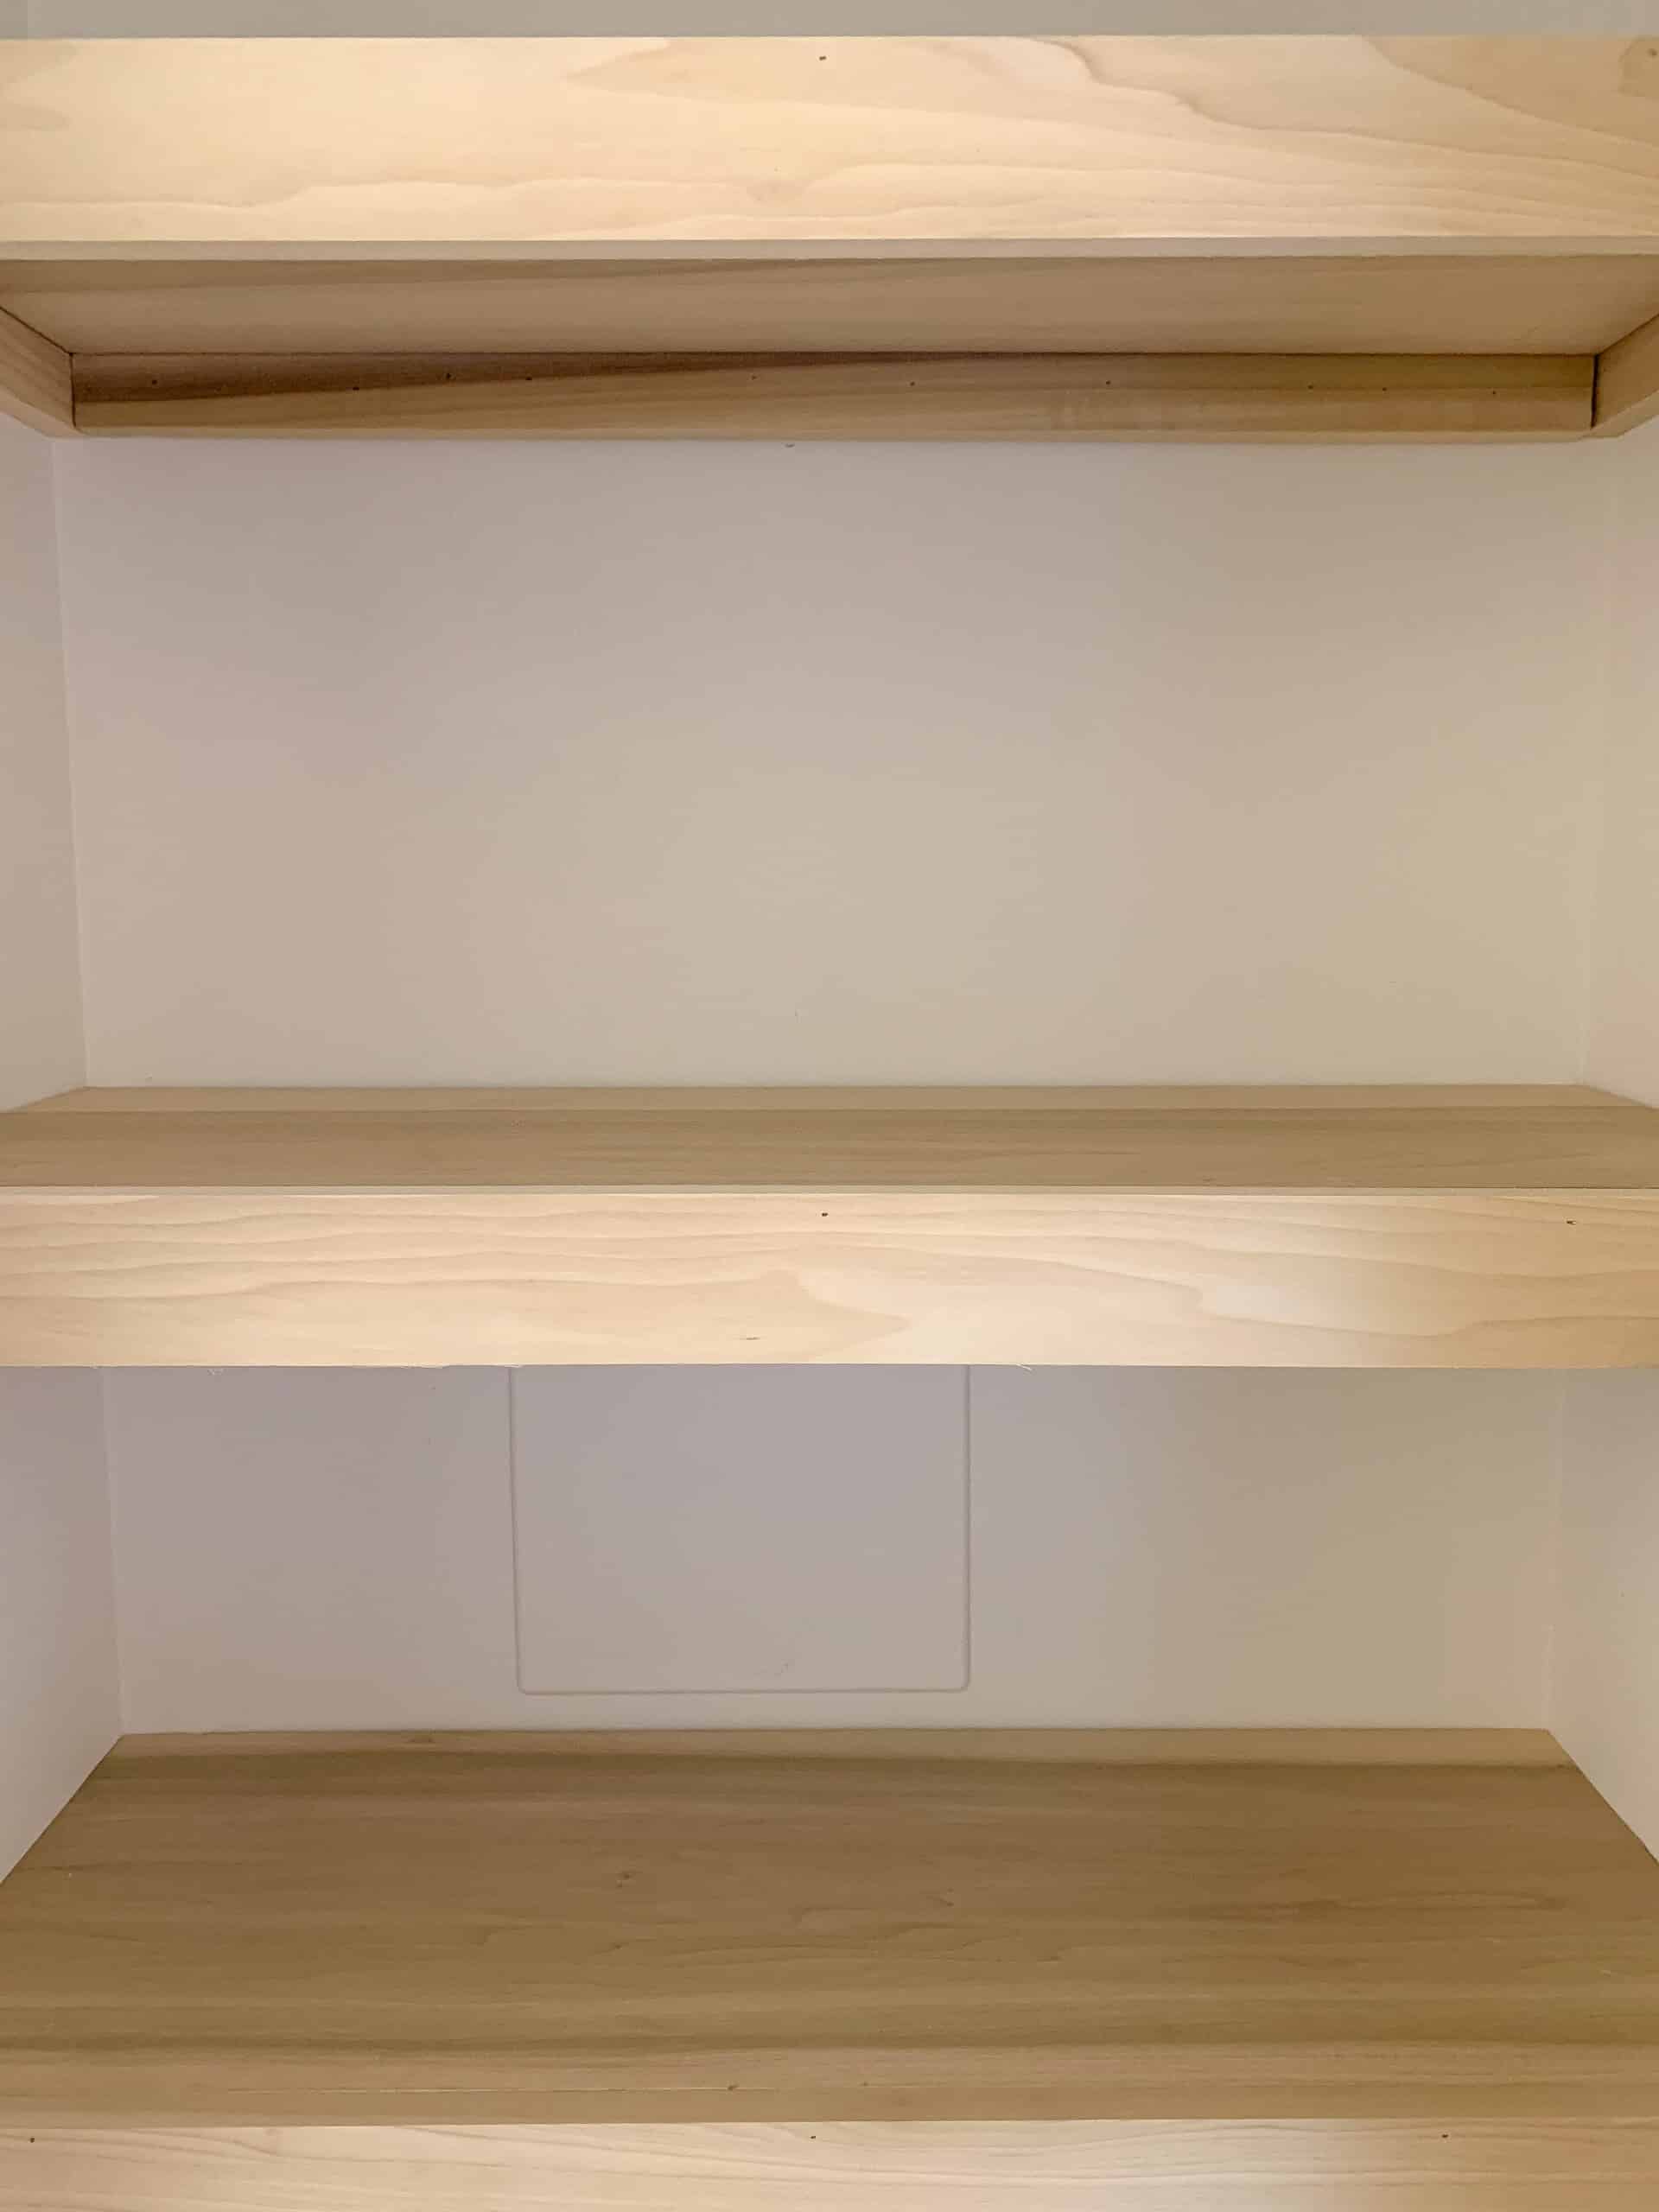 Easy Diy Closet Shelves Tutorial, Wood Closet Shelving